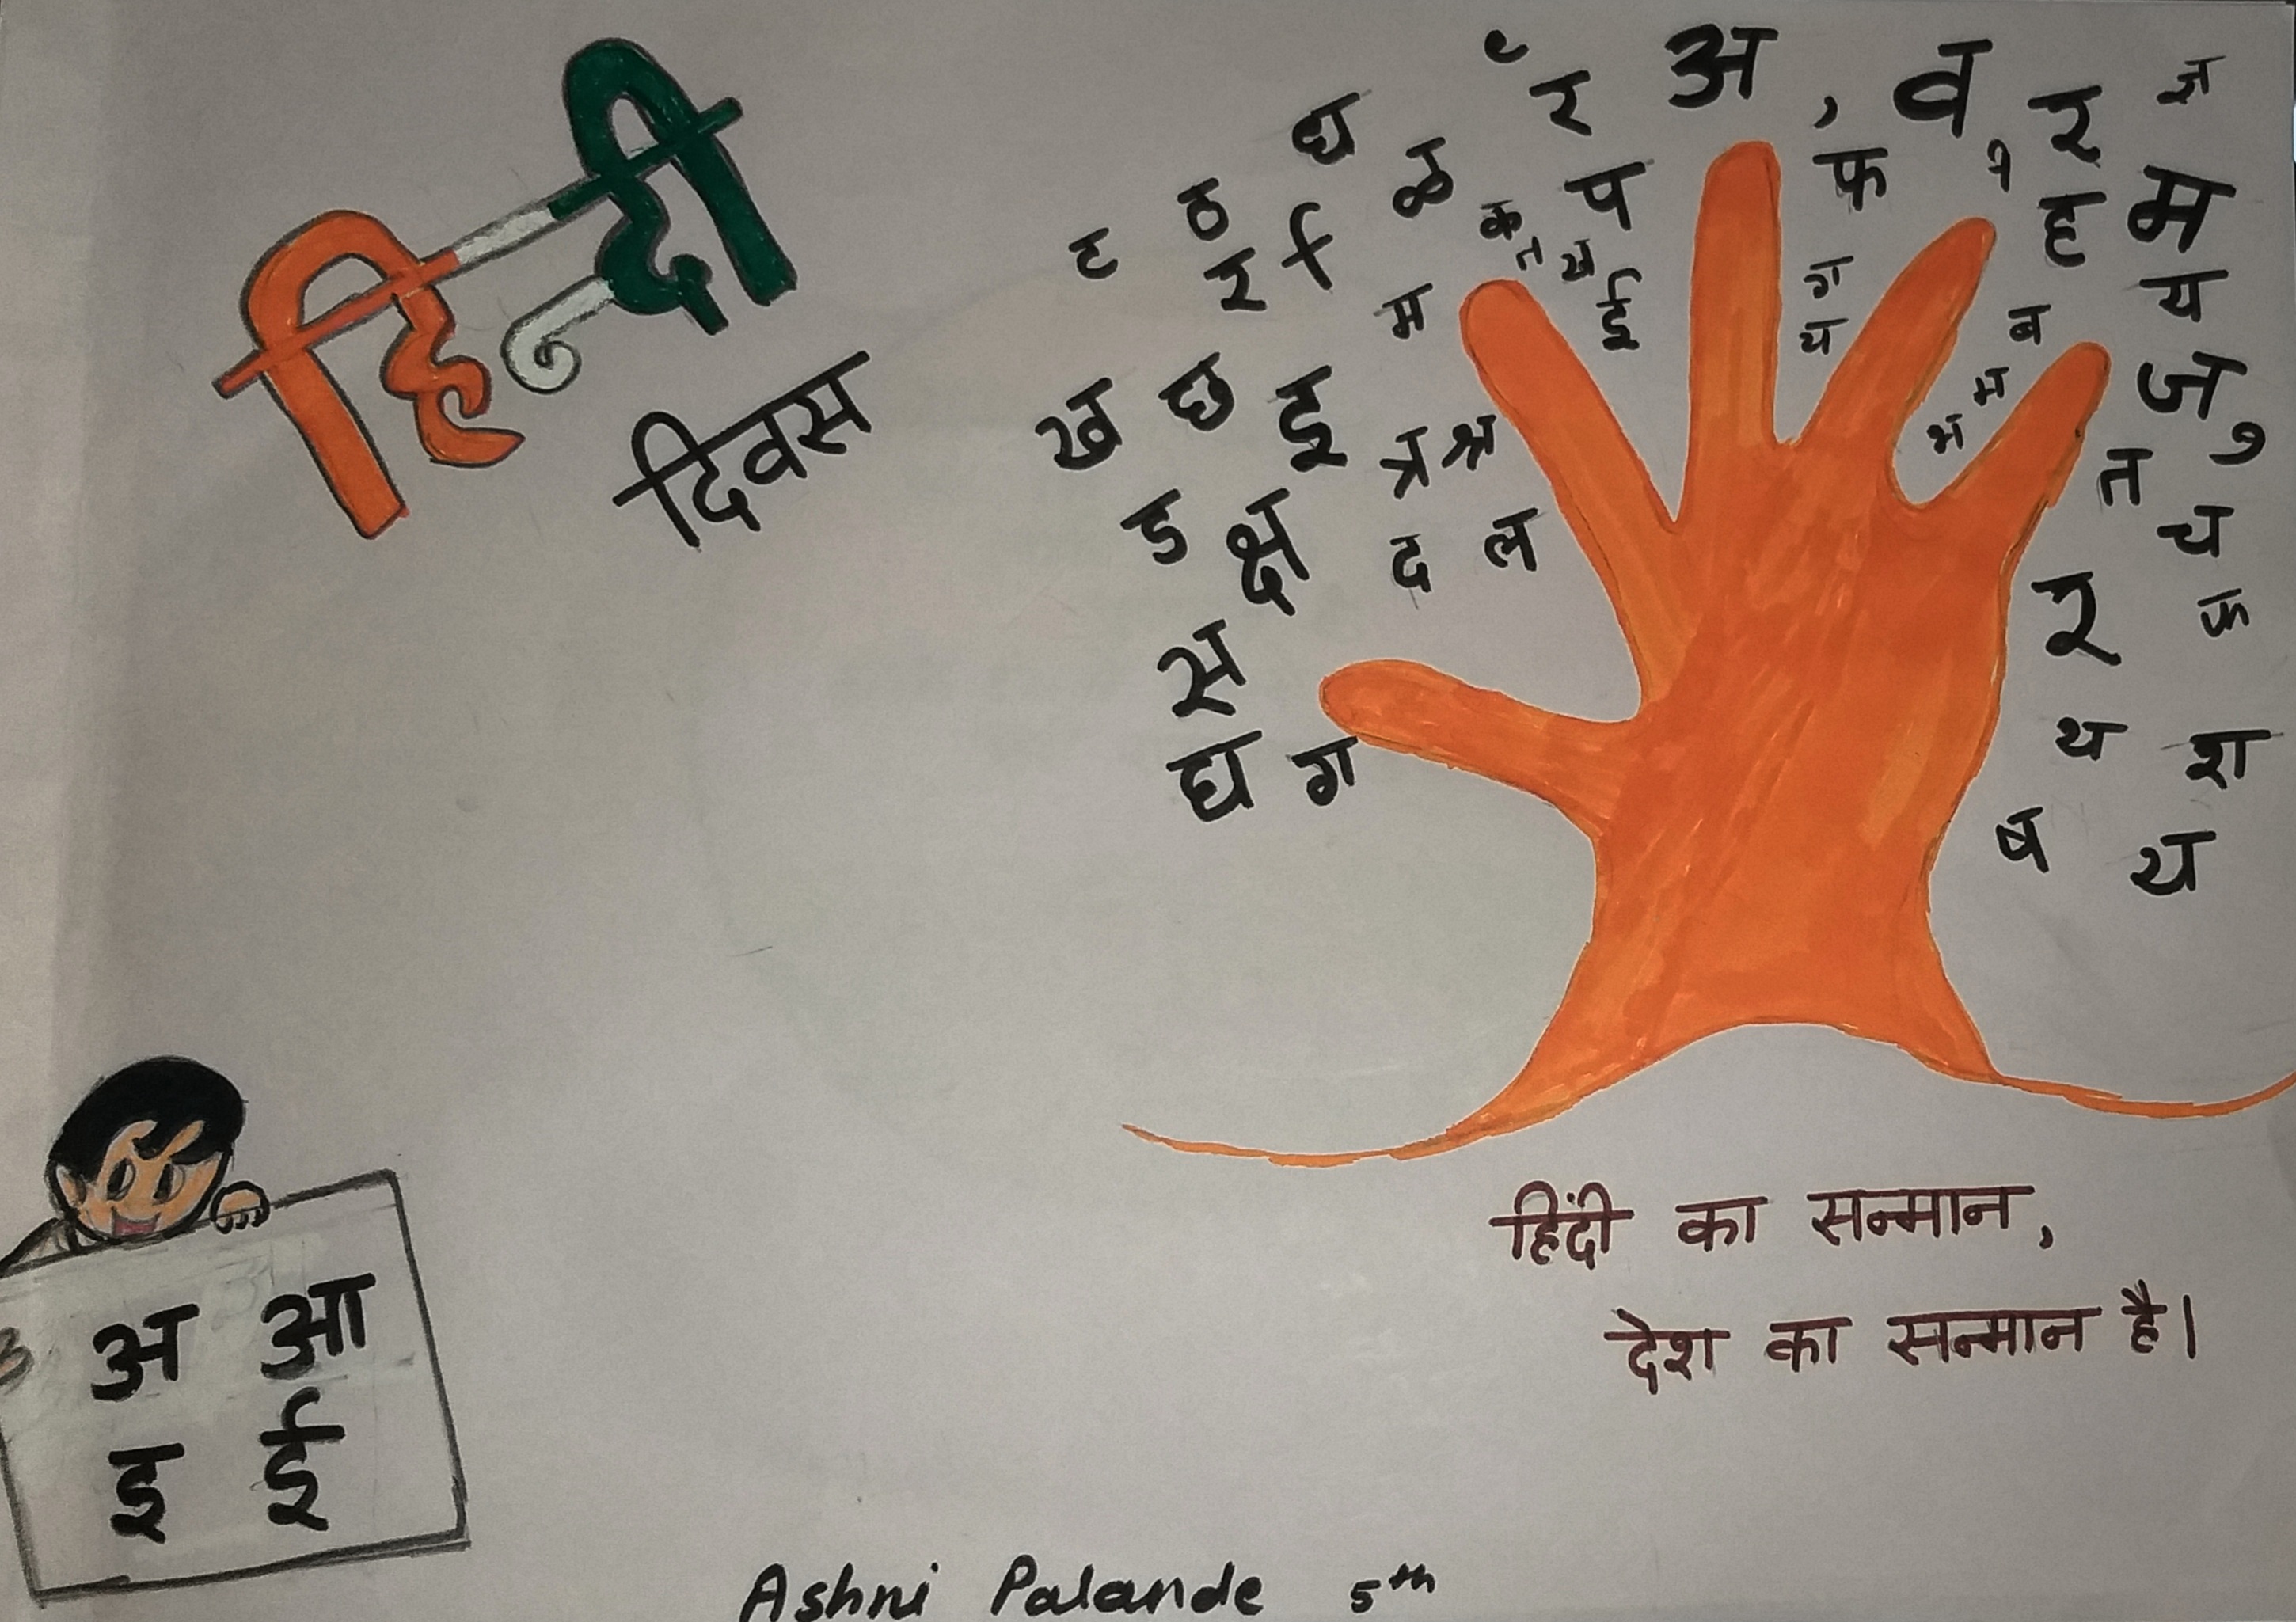 Hindi Day poster making / Hindi Diwas drawing / How to draw Hindi Diwas /  Poster making on Hindi Day - YouTube